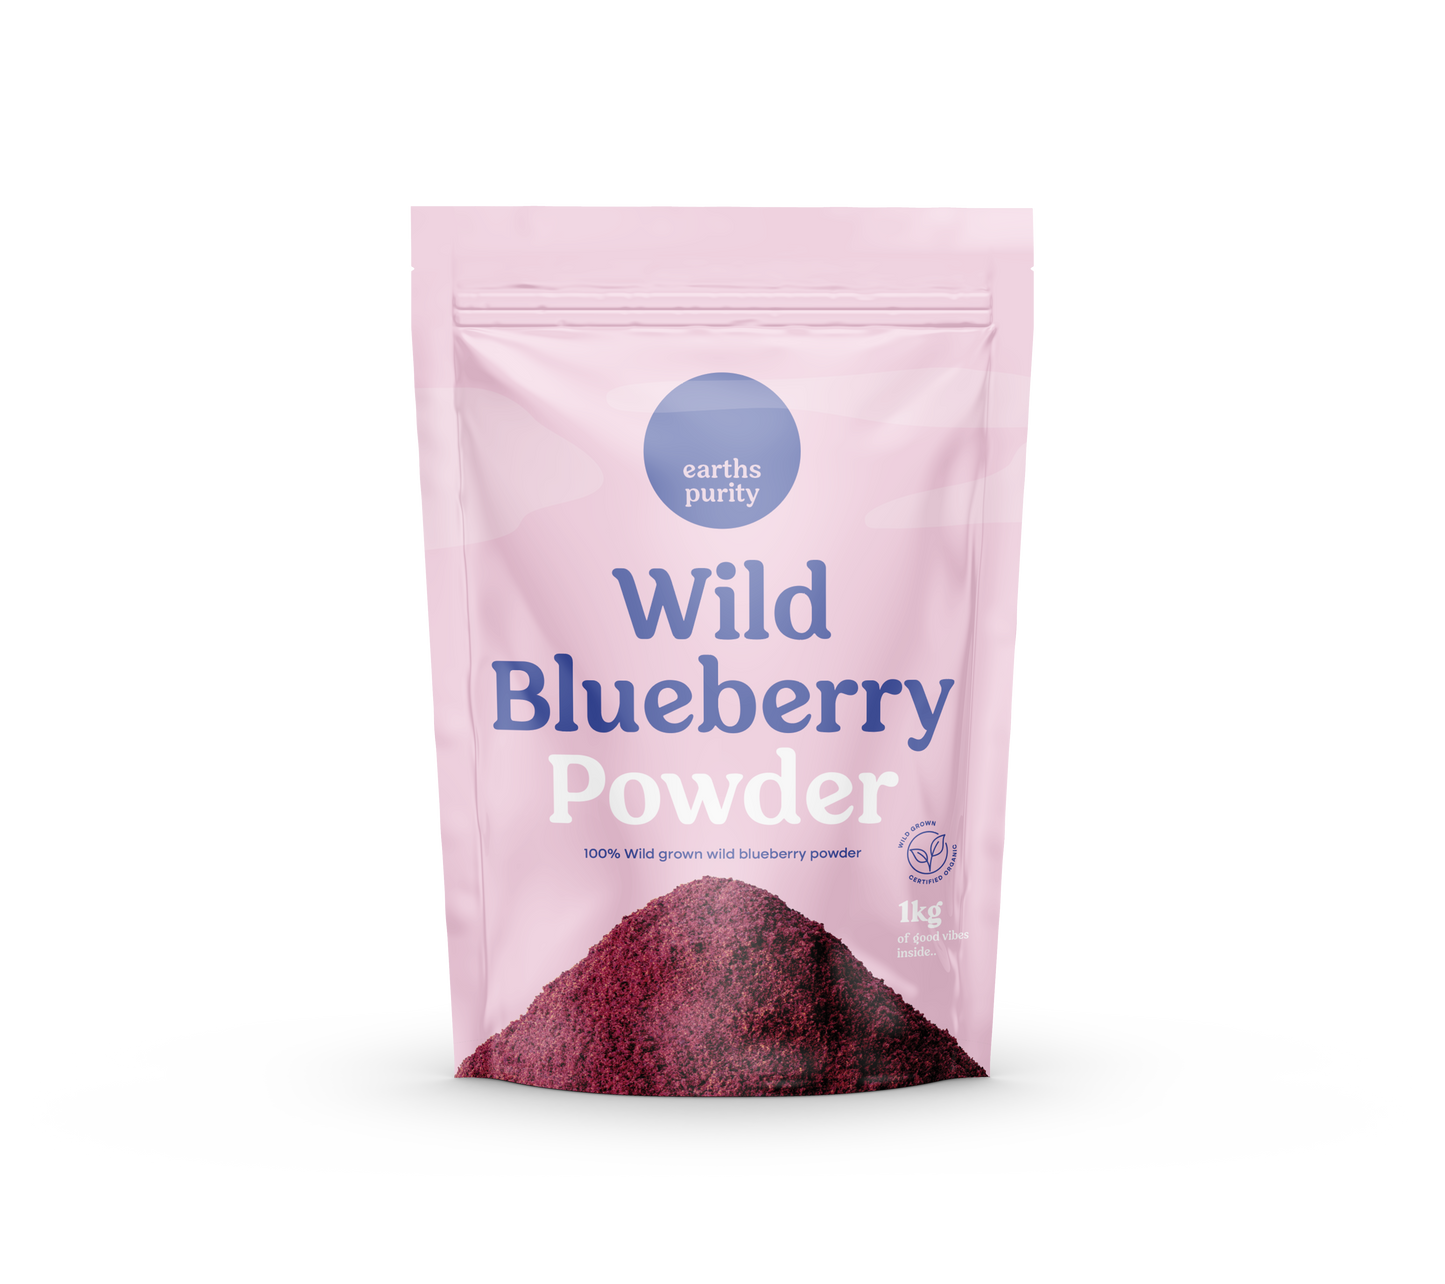 Wild Blueberry Powder 1kg (Wild Grown)